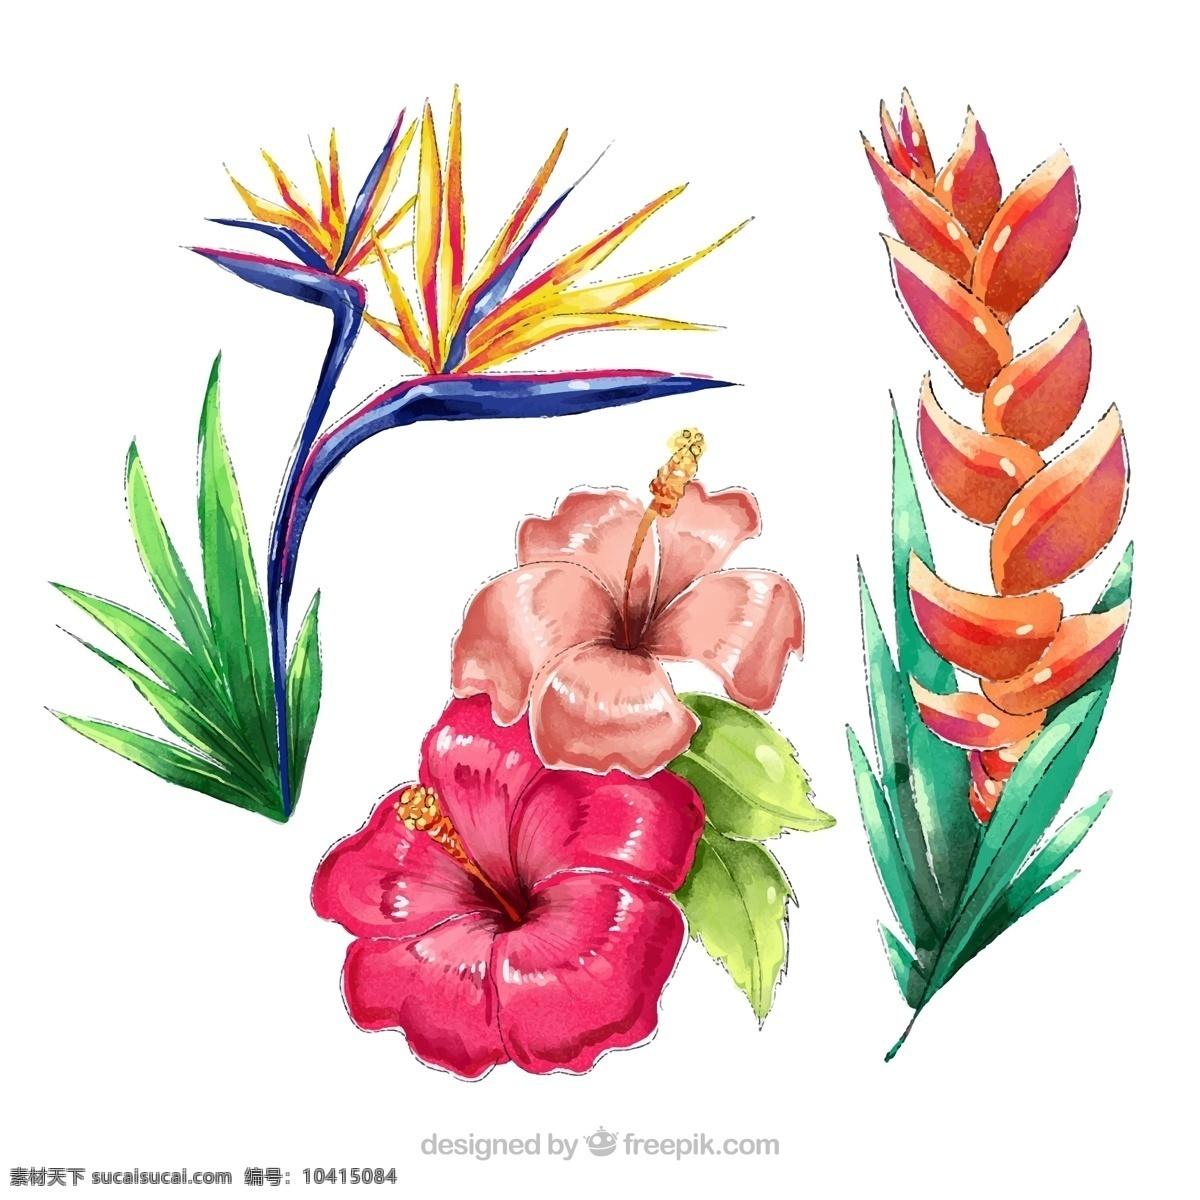 水彩 绘 热带 花卉图片 鹤望兰 扶桑花 蝎尾蕉 矢量 高清图片